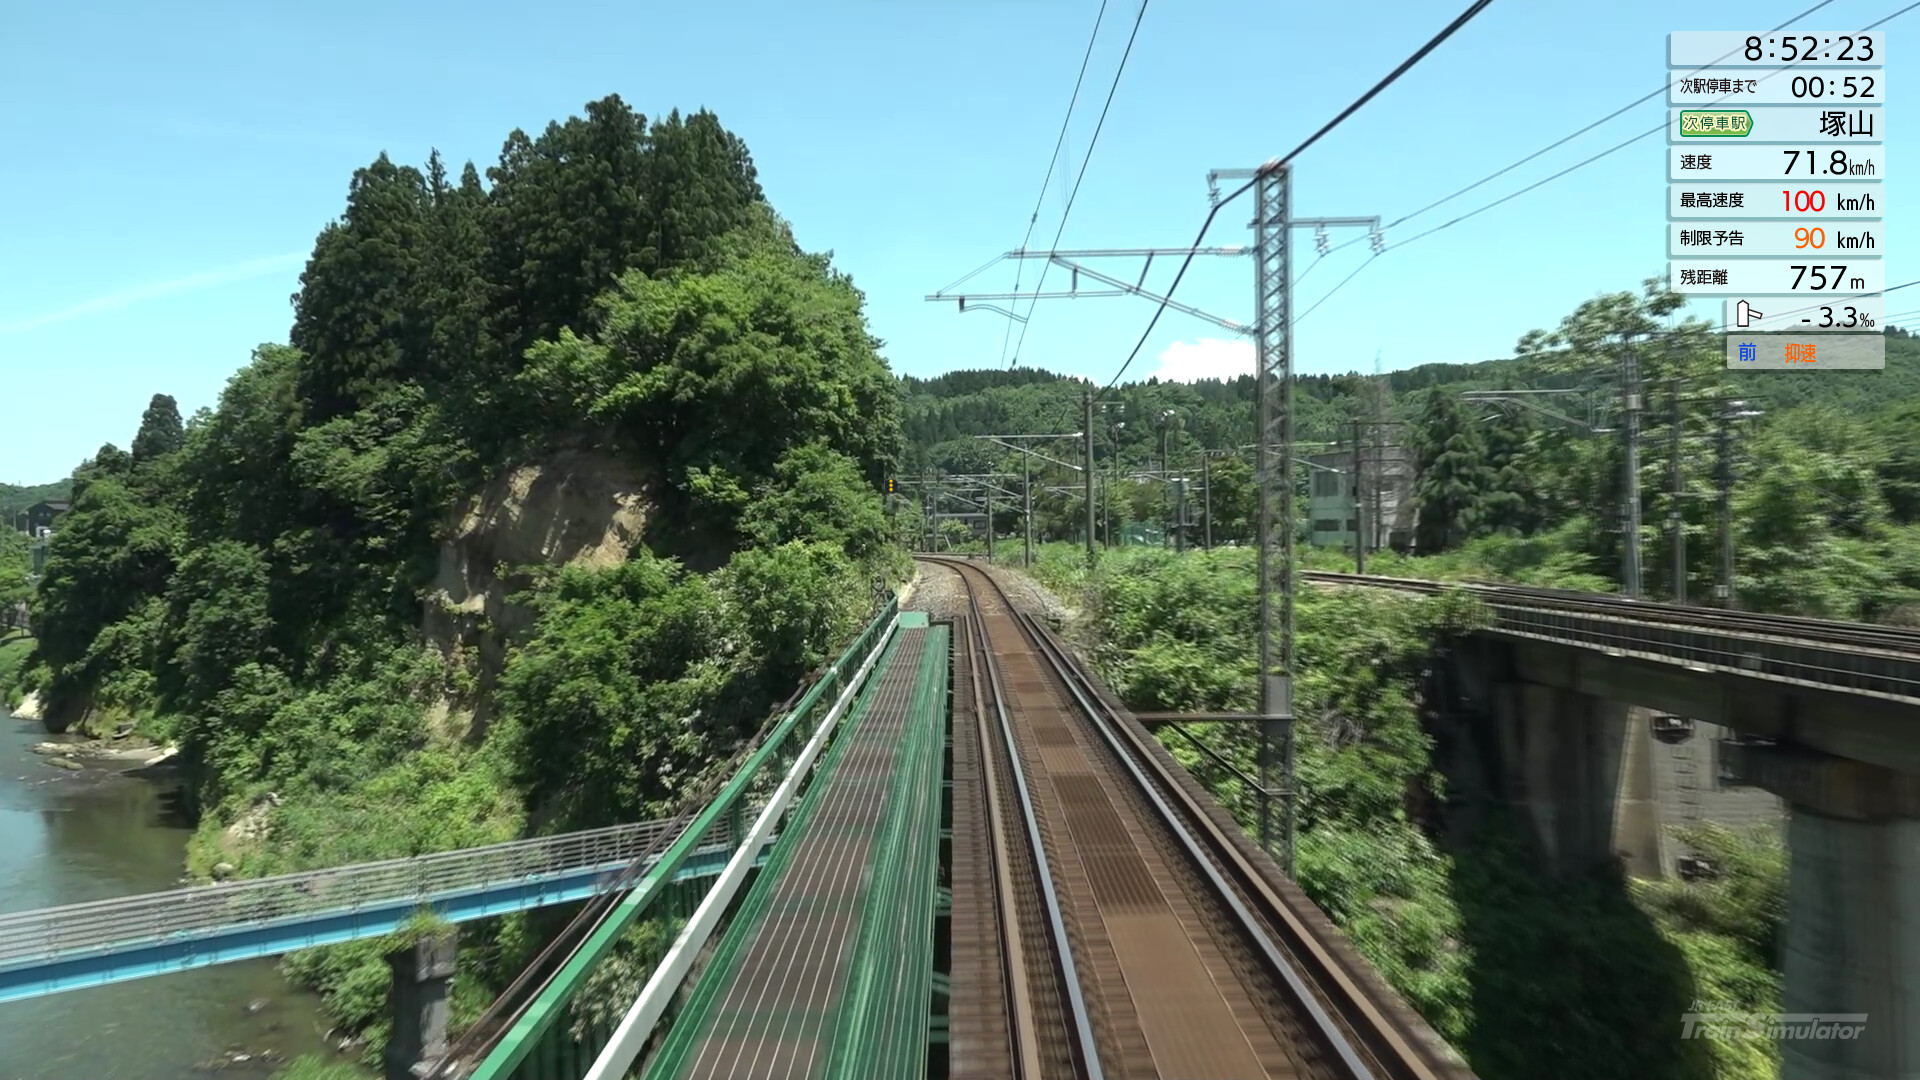 JR EAST Train Simulator: Shin-etsu Line (Naoetsu to Niigata) E129 